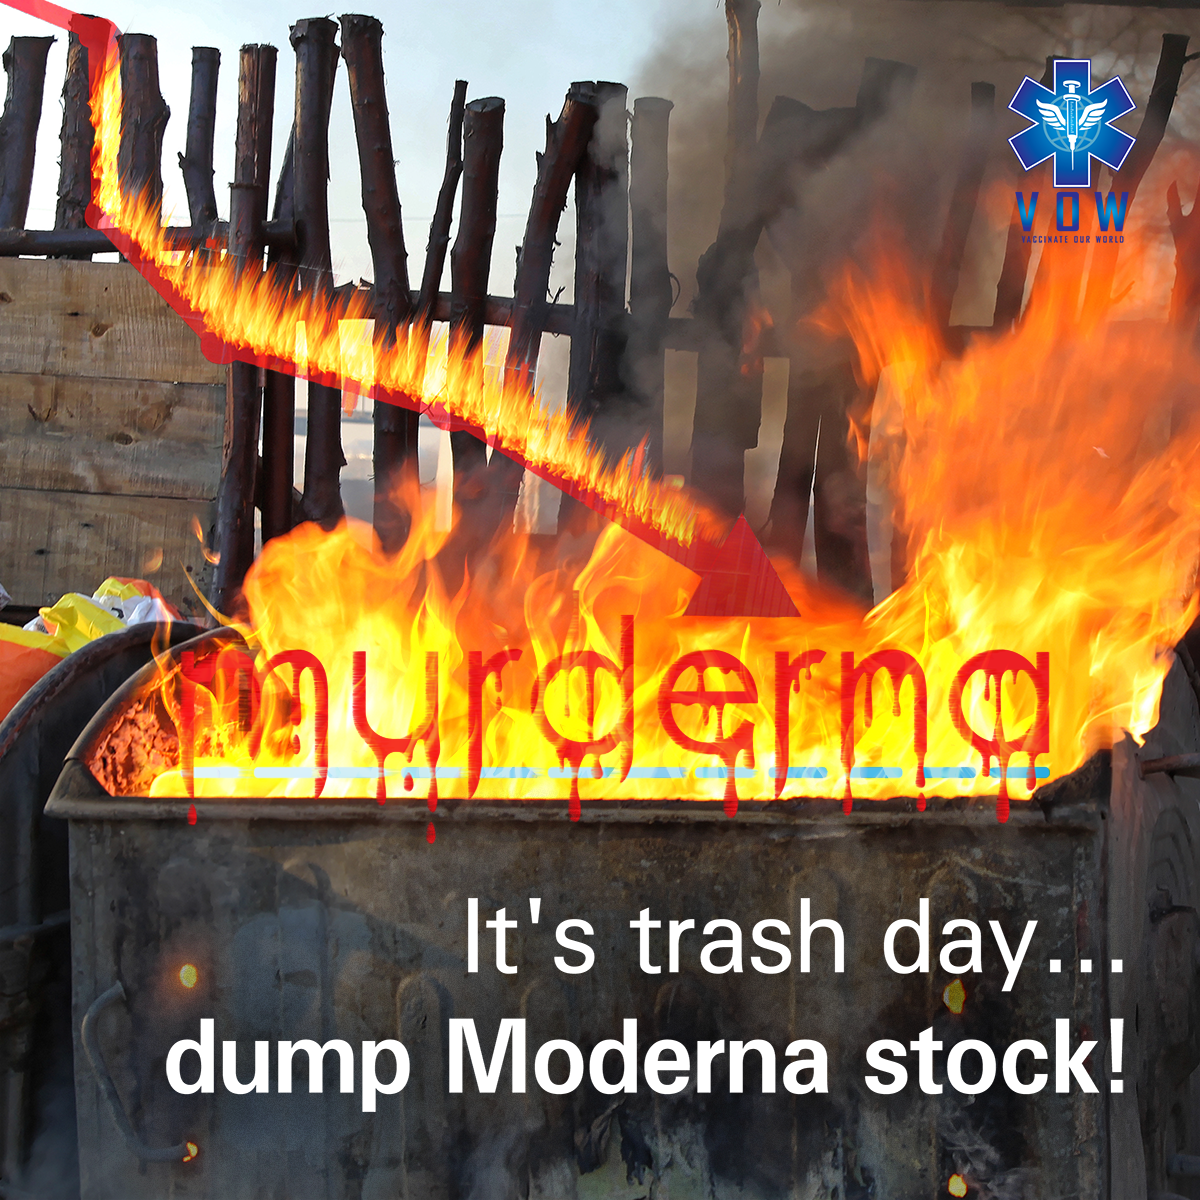 Top Moderna Shareholders Must Dump Stock